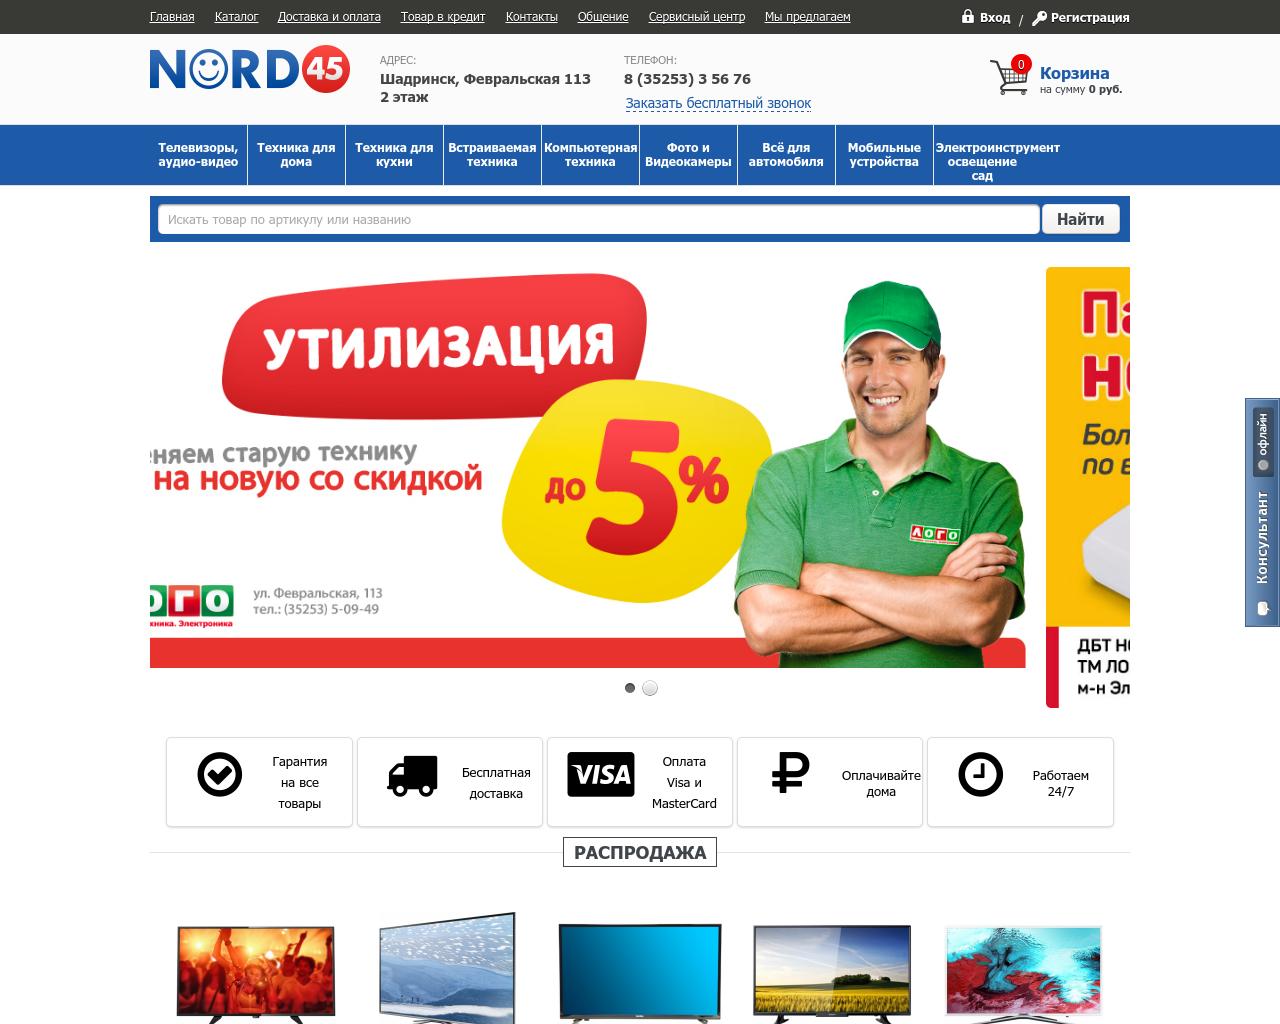 Изображение сайта nord45.ru в разрешении 1280x1024